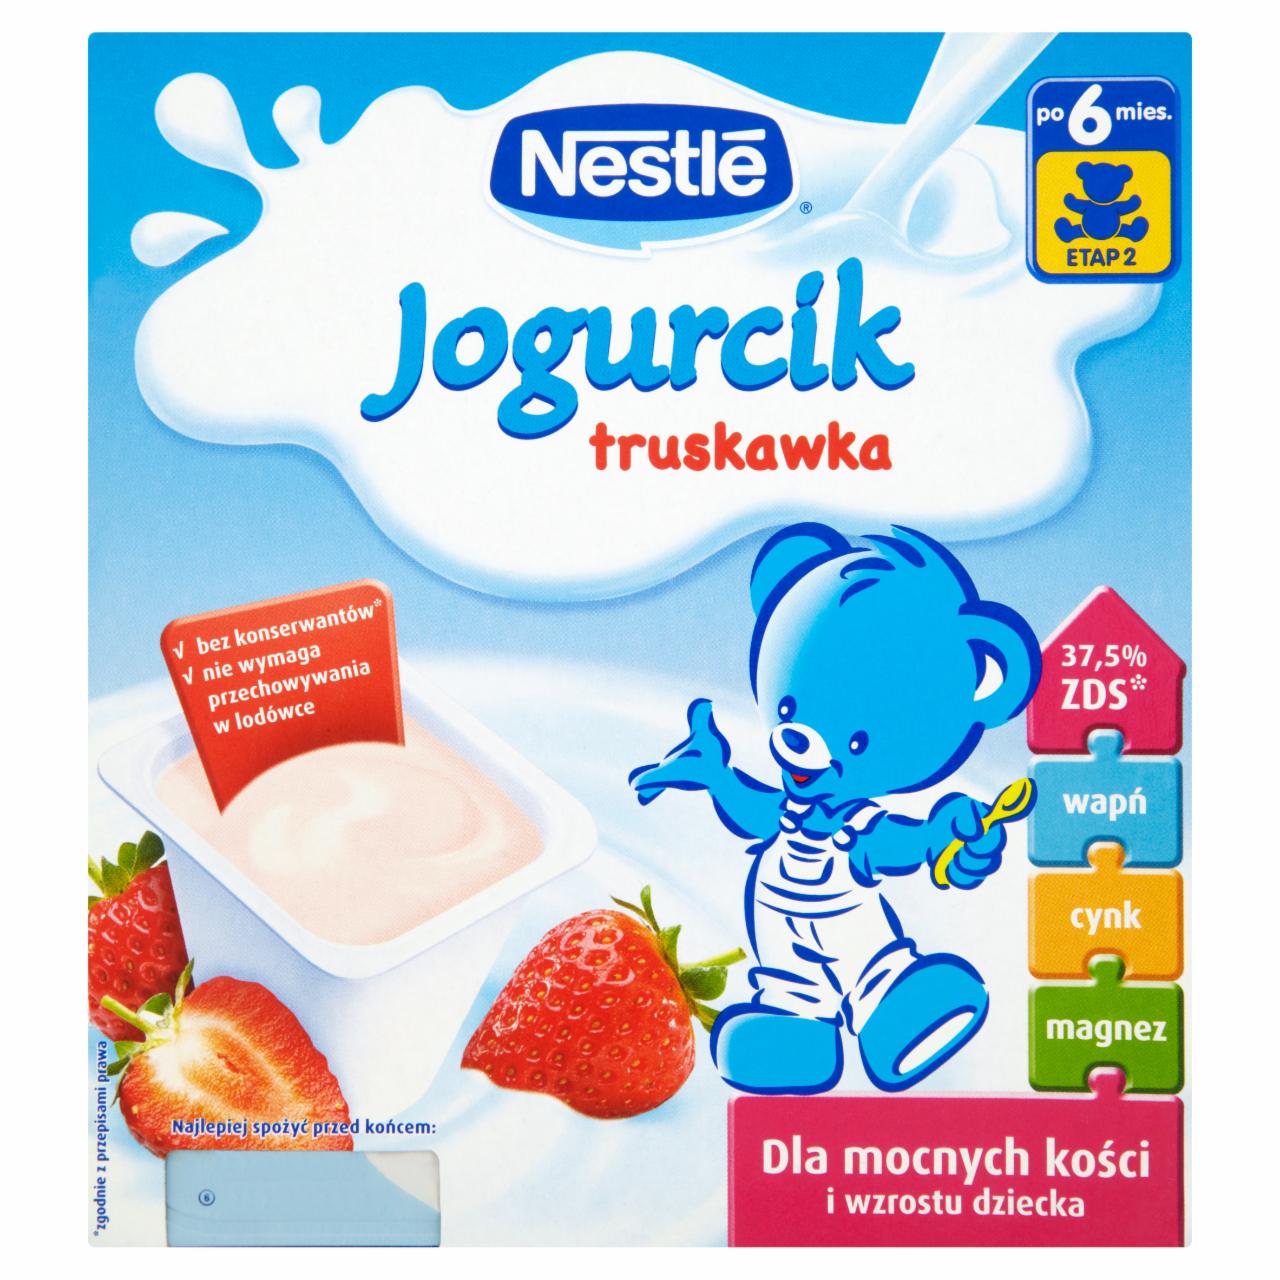 Zdjęcia - Nestlé Jogurcik truskawka po 6 miesiącu 400 g (4 sztuki)